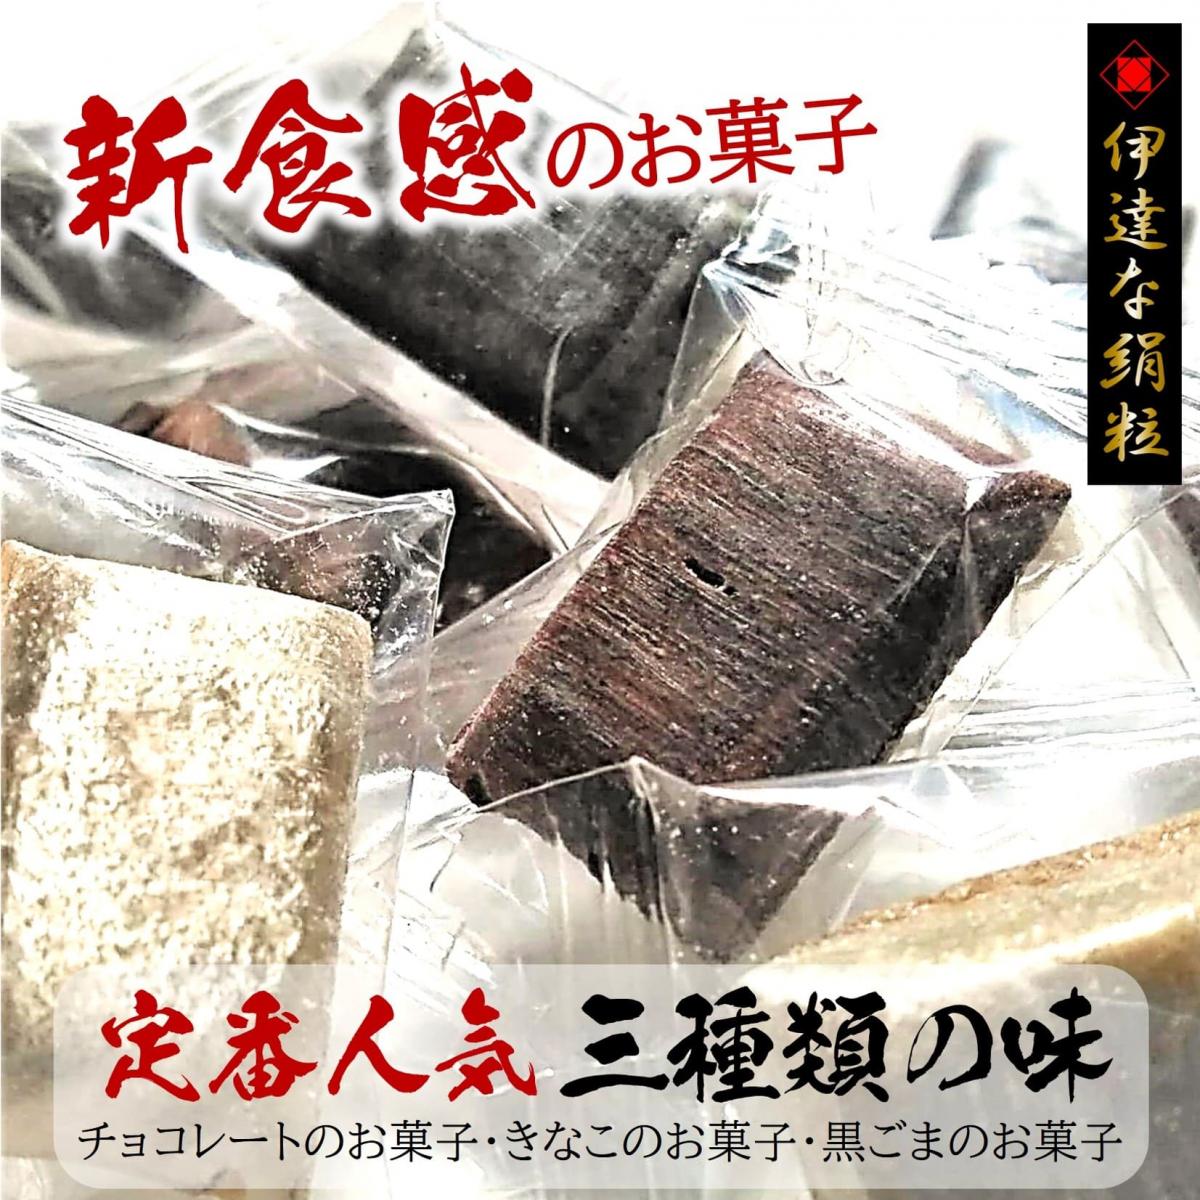 【新食感のお菓子/9袋詰め合せ】3種類の味くらべ